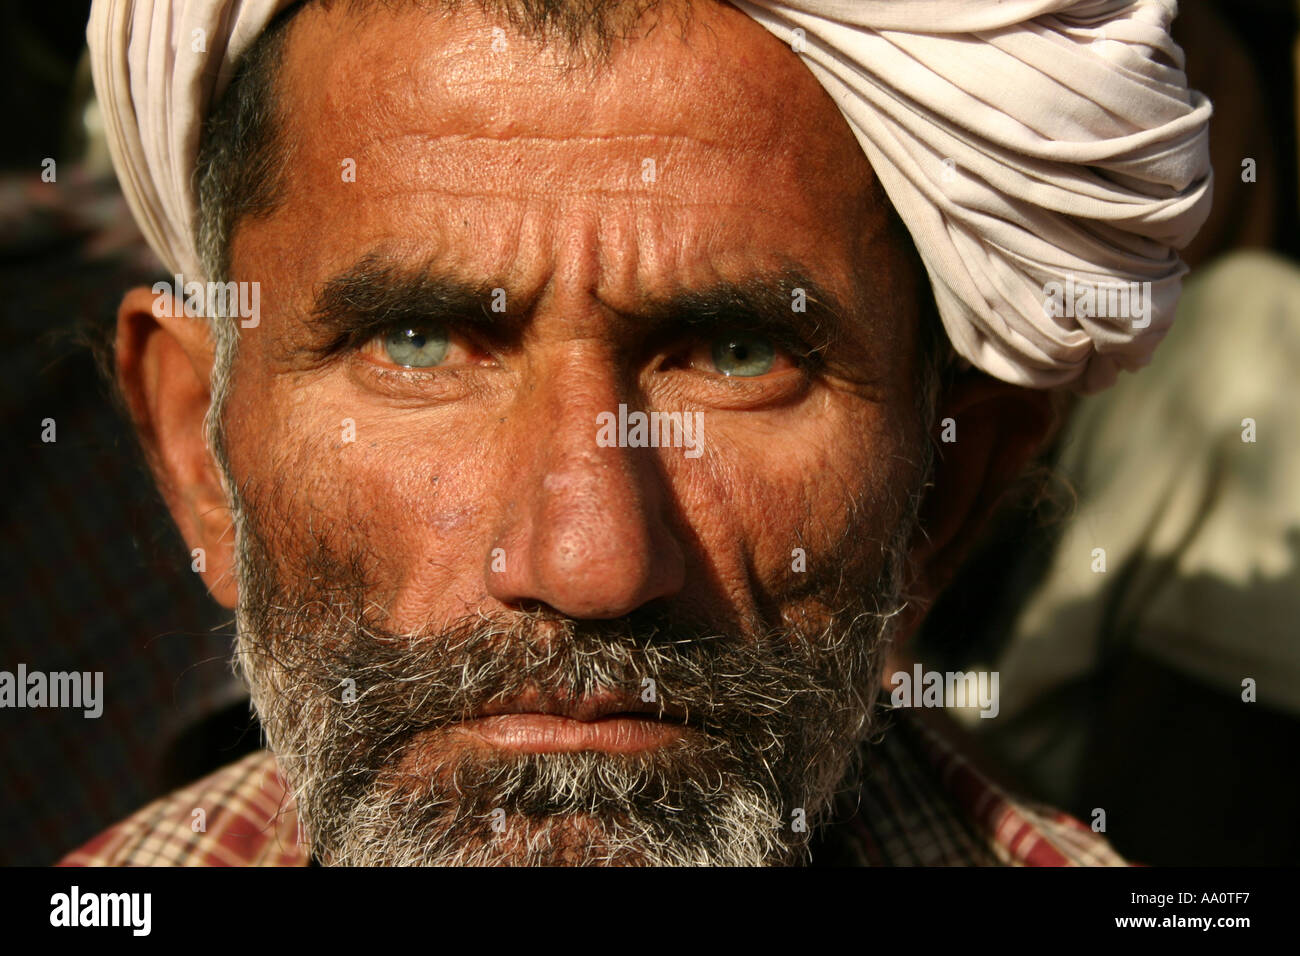 L'homme du Rajasthan avec des yeux d'un bleu profond regarde droit dans l'appareil photo Banque D'Images